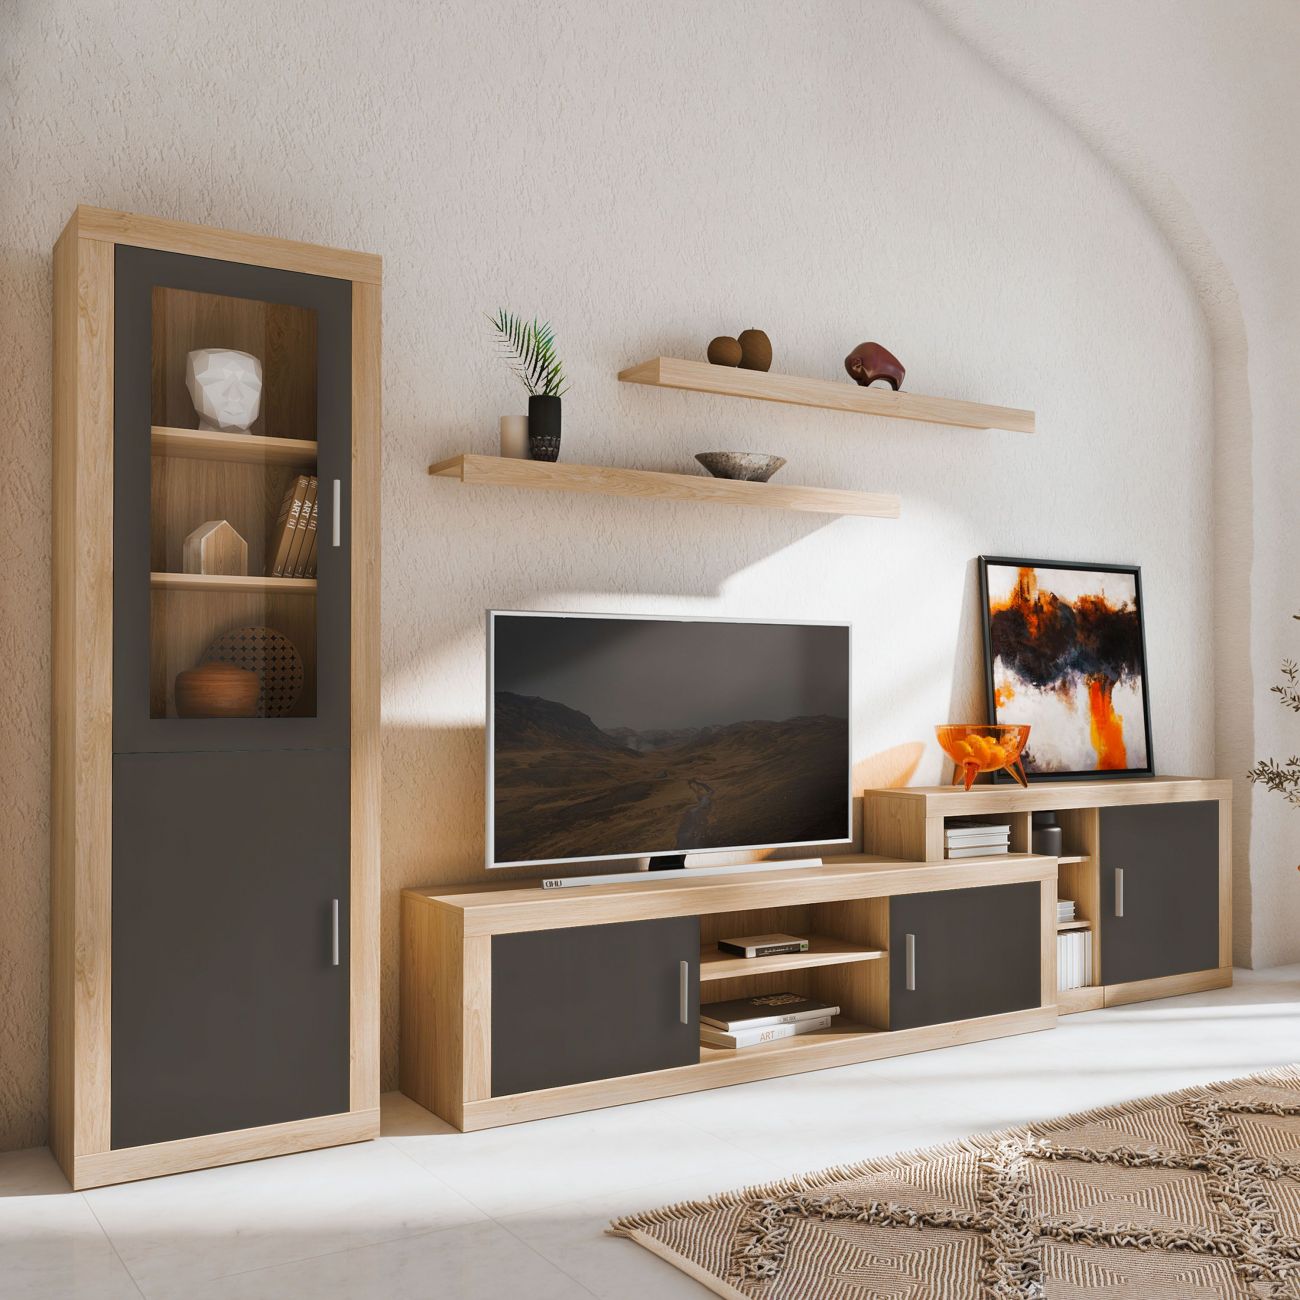 ▷ Muebles modulares IKEA para el salón  Muebles de comedor ikea, Muebles  modulares, Muebles para televisores